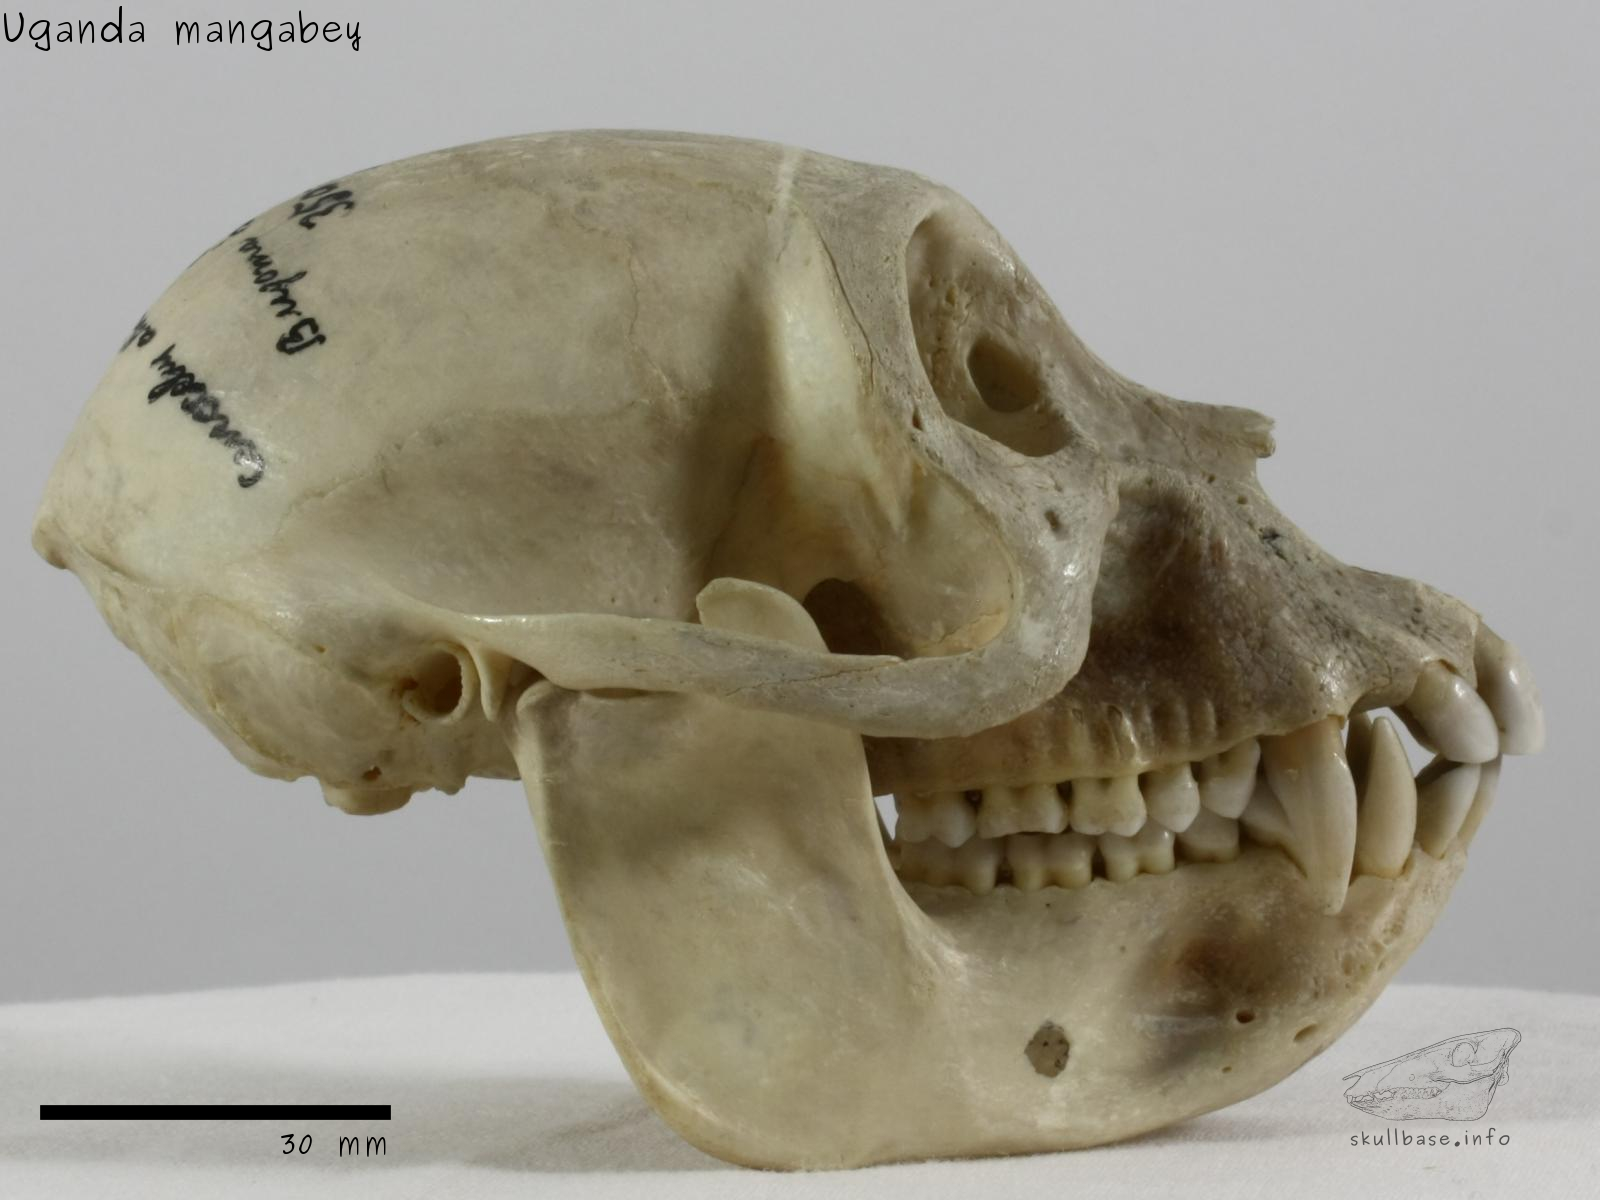 Uganda mangabey (Lophocebus ugandae) skull lateral view